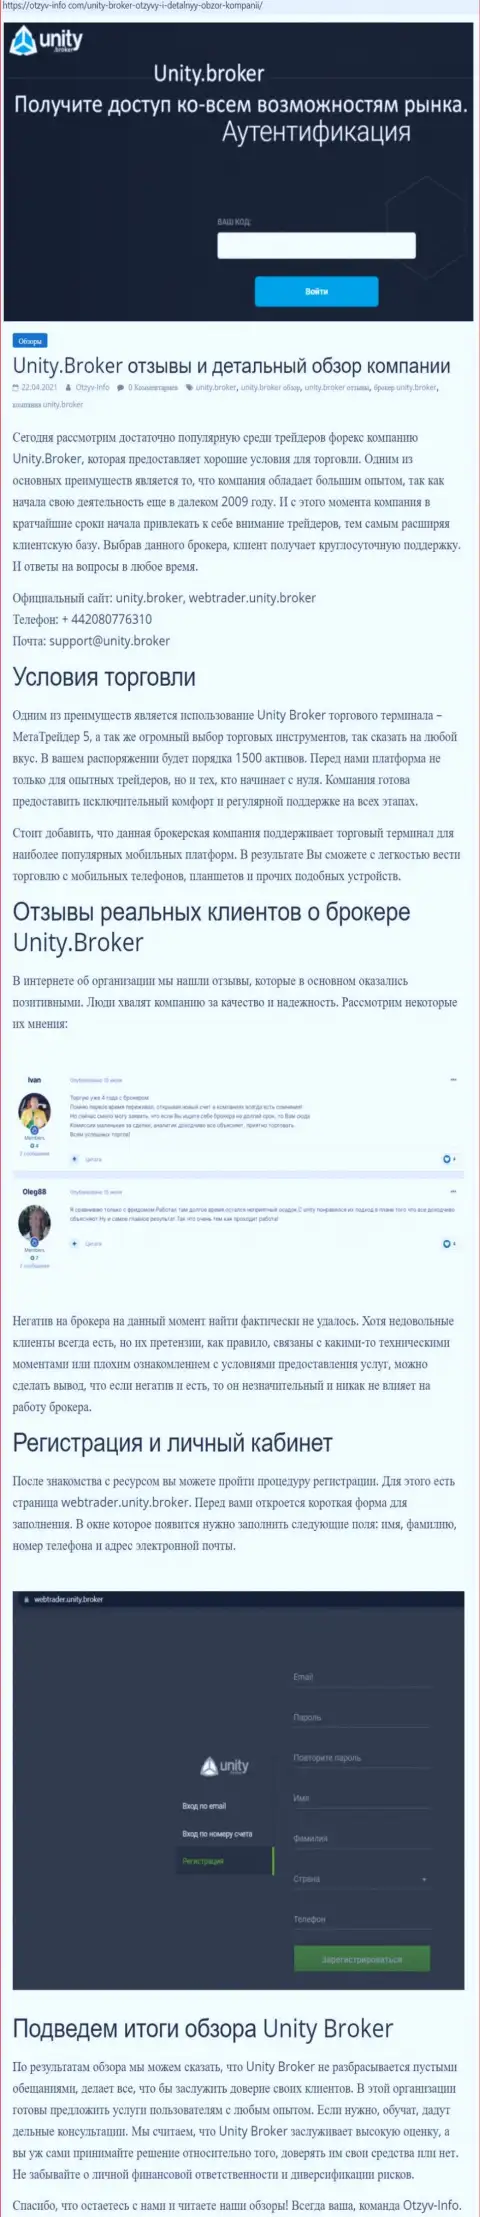 Обзор деятельности ФОРЕКС-компании Unity Broker на сайте Отзыв-Инфо Ком